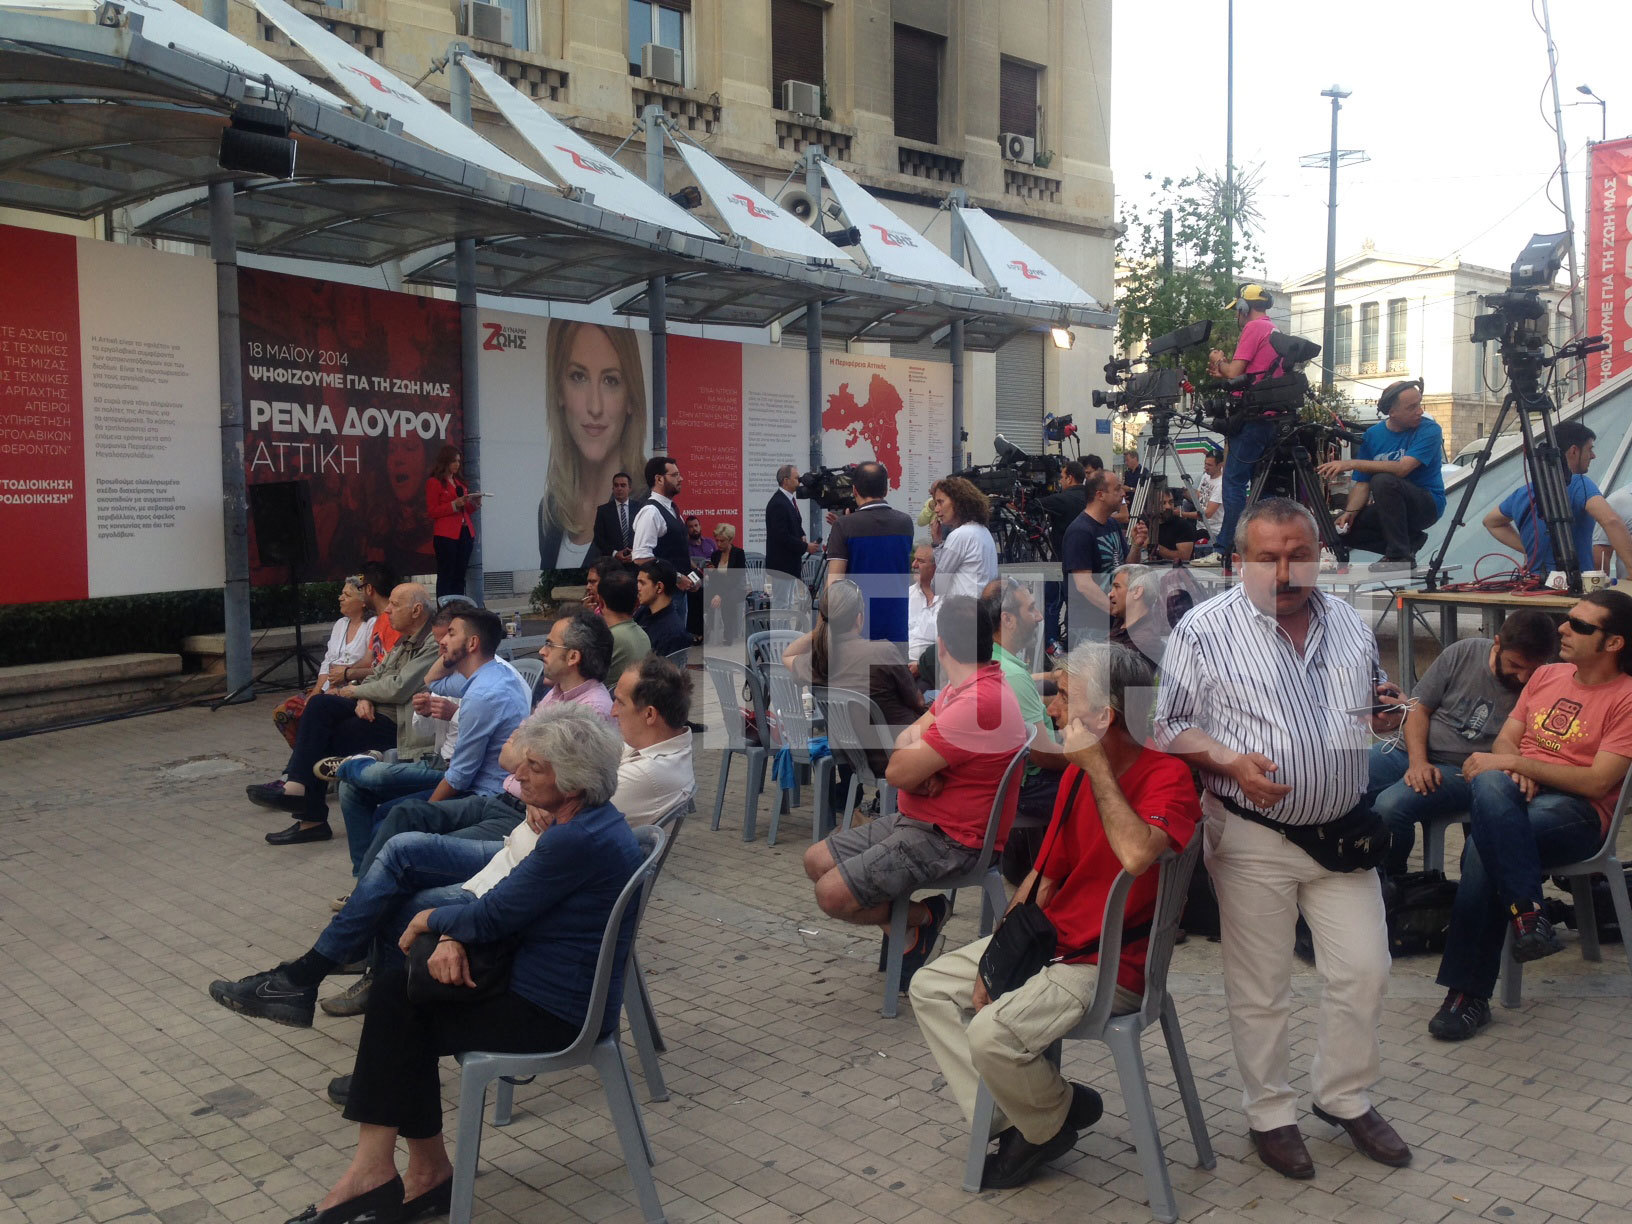 Περιφερειακές εκλογές: Χαμηλοί τόνοι στο εκλογικό κέντρο της Ρένας Δούρου